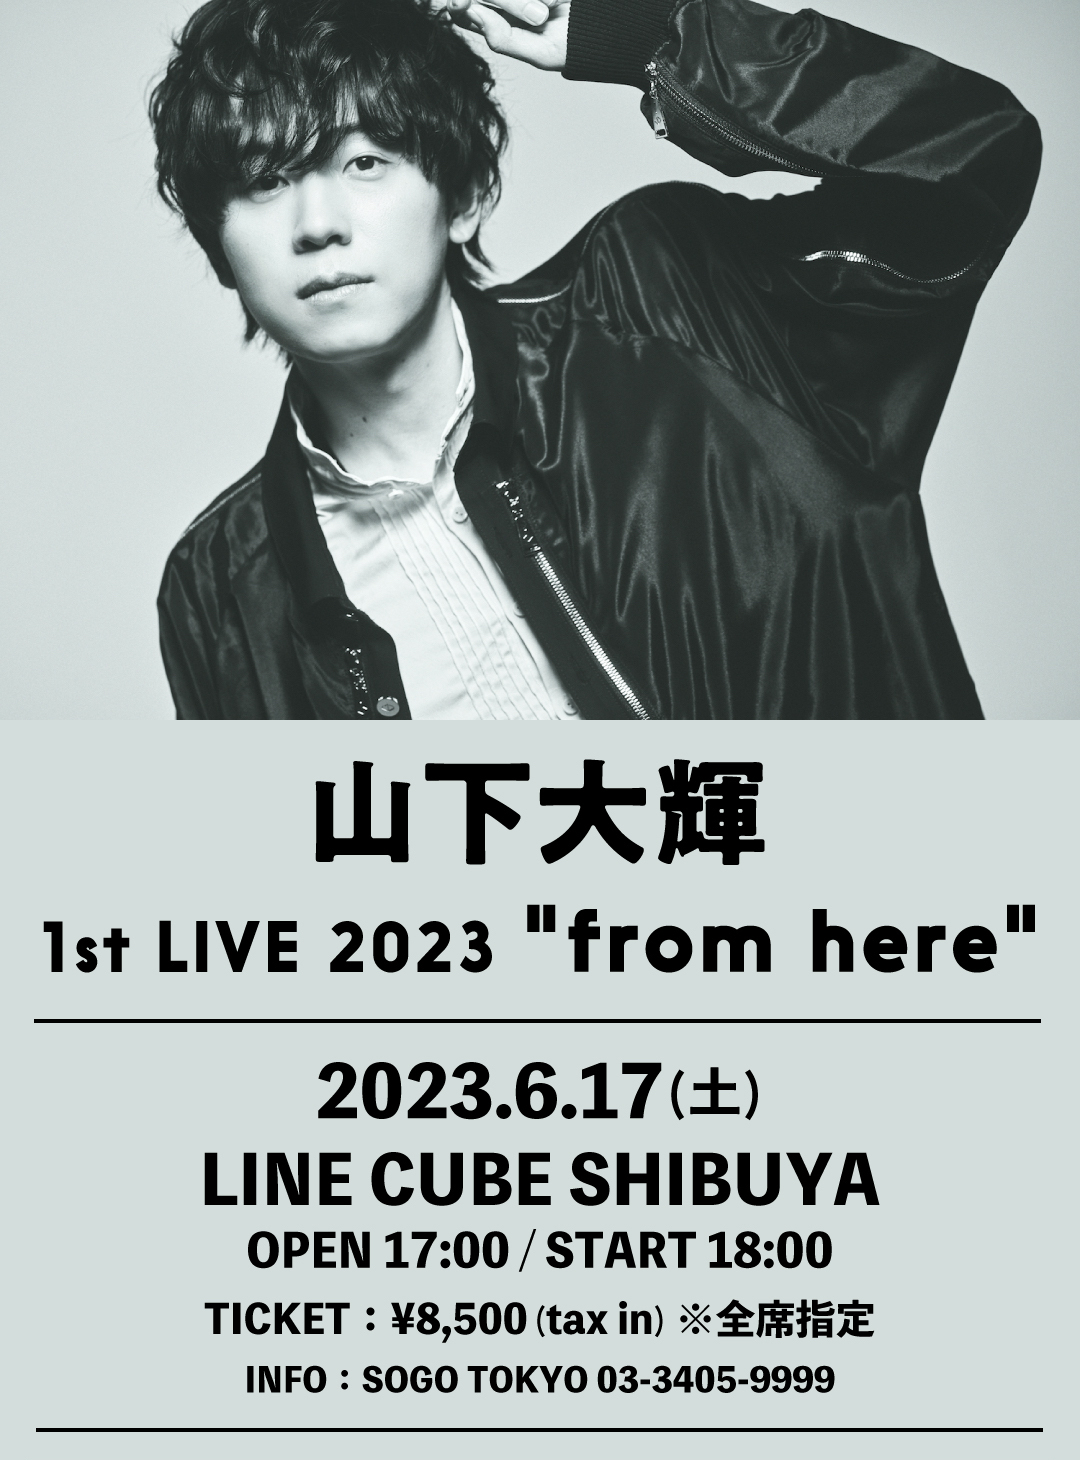 山下大輝 1st LIVE 2023 